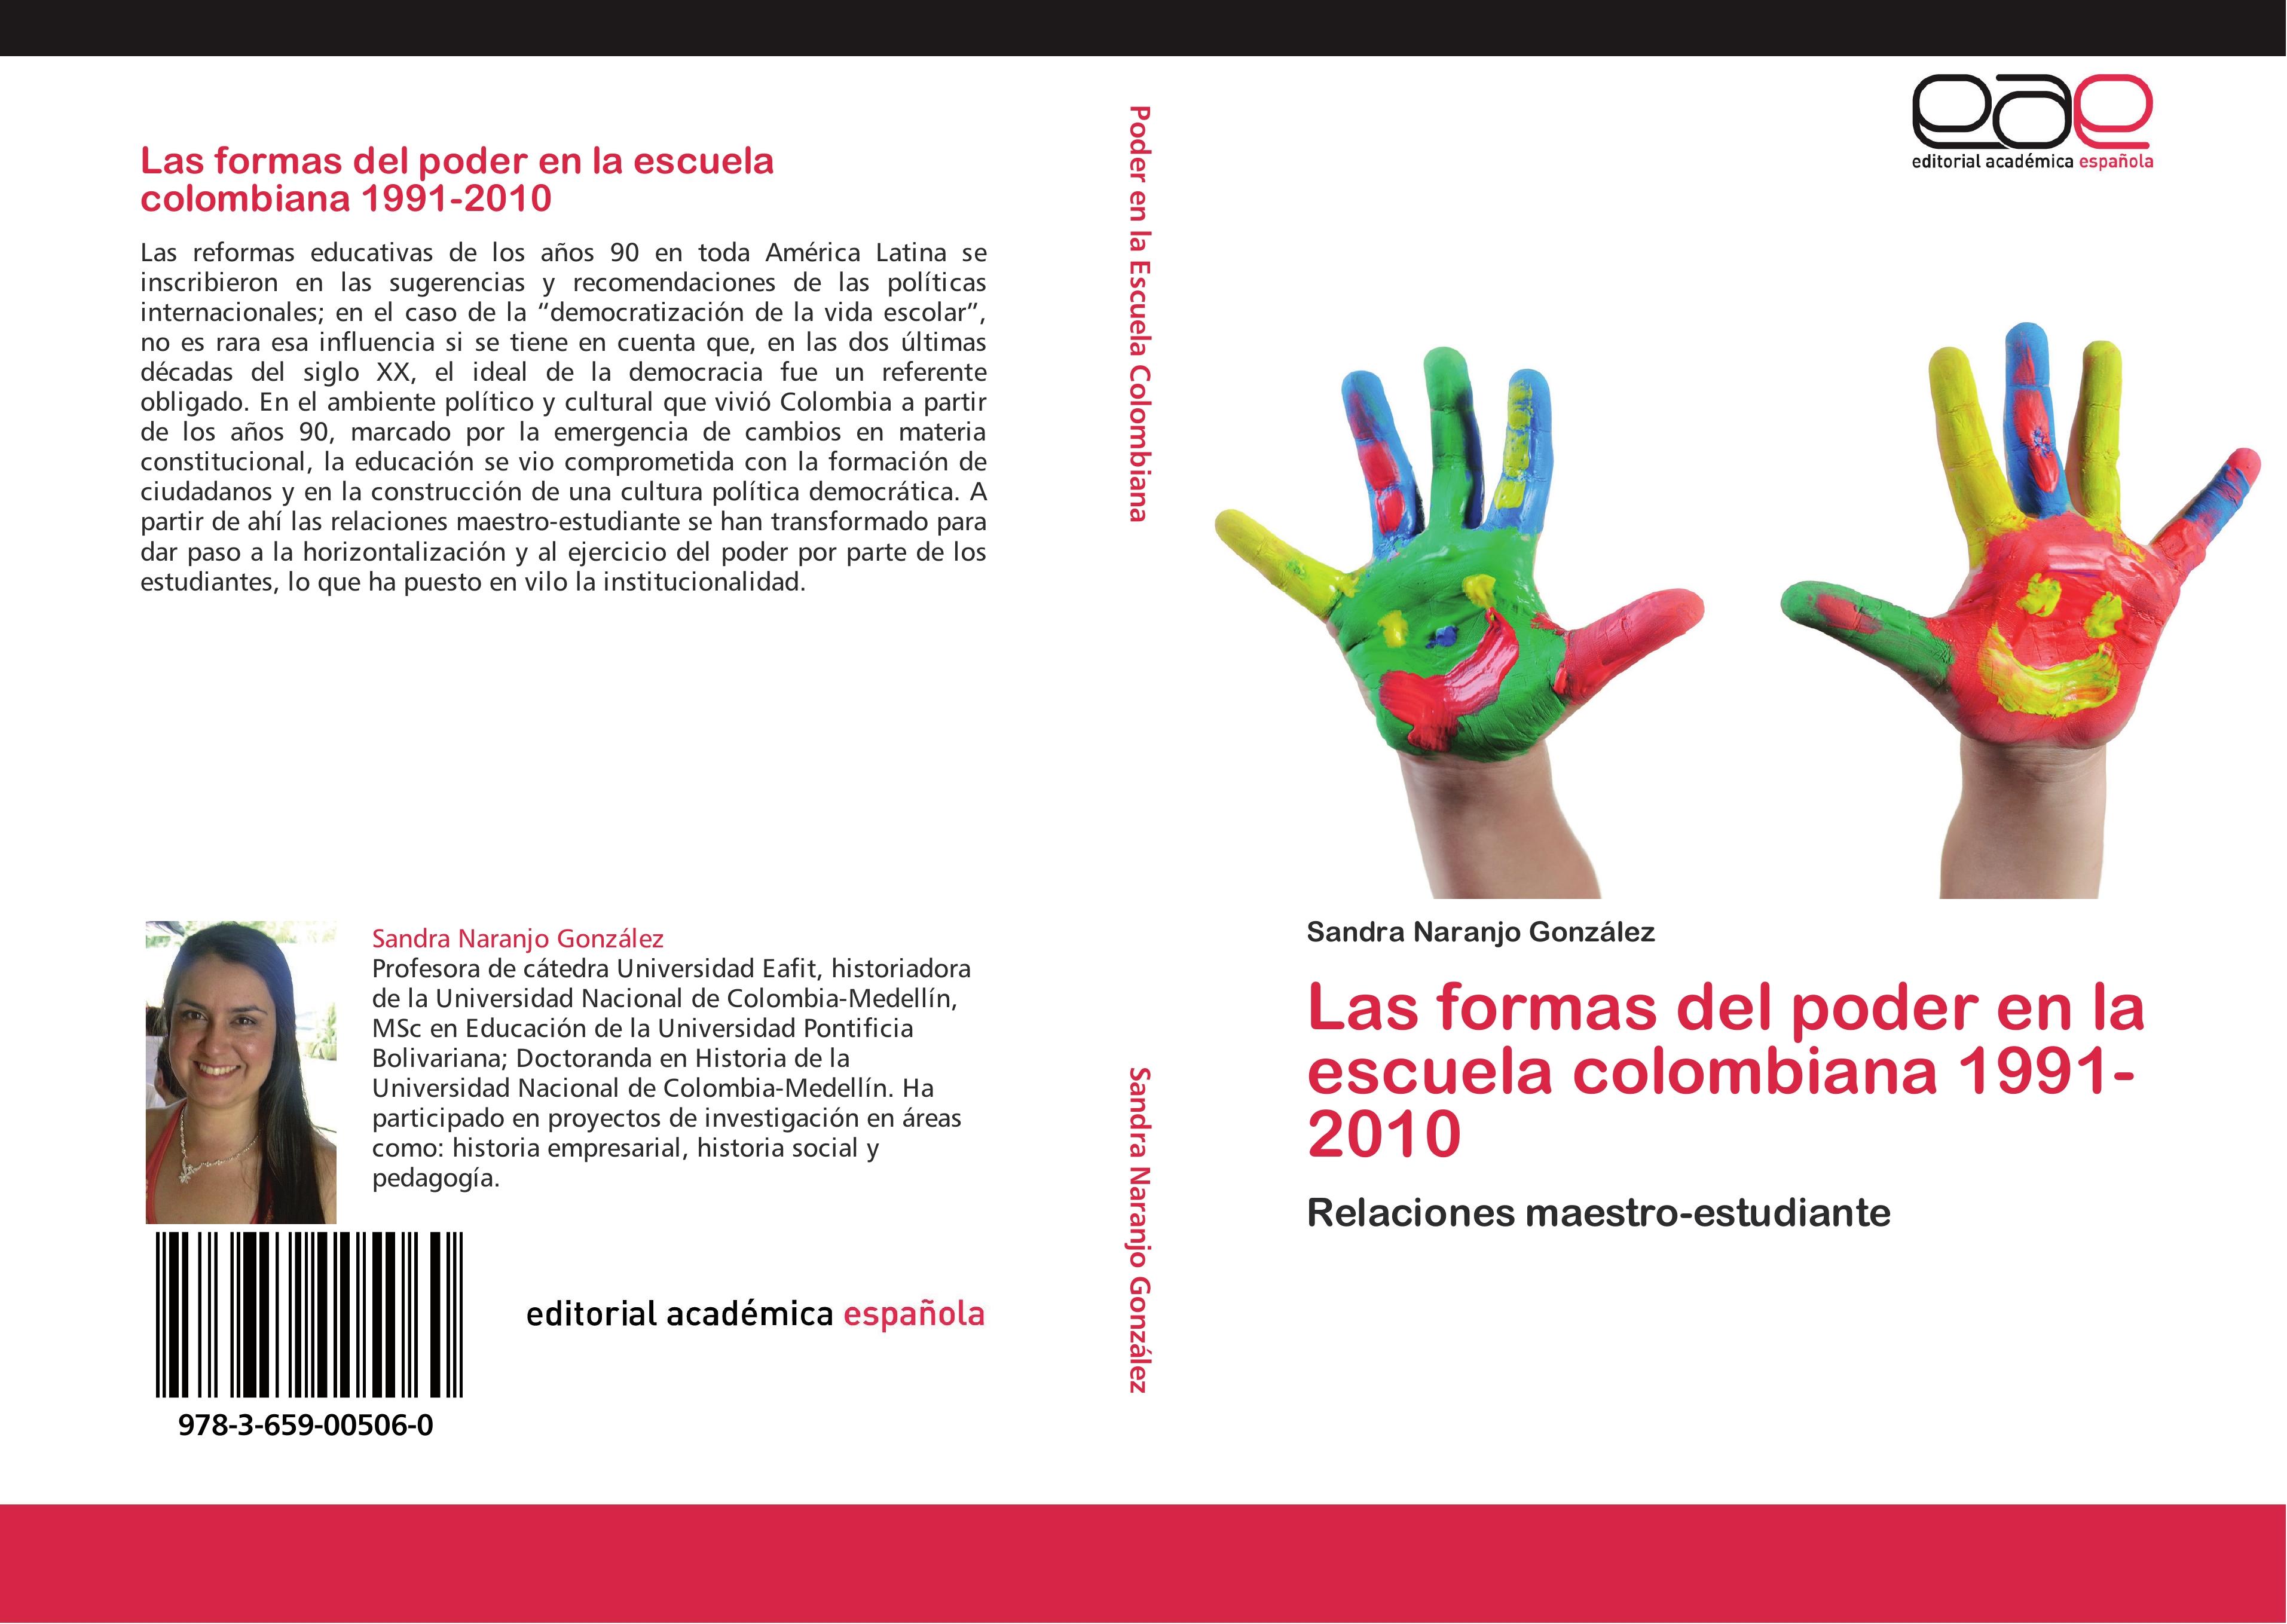 Las formas del poder en la escuela colombiana 1991-2010 - Sandra Naranjo González